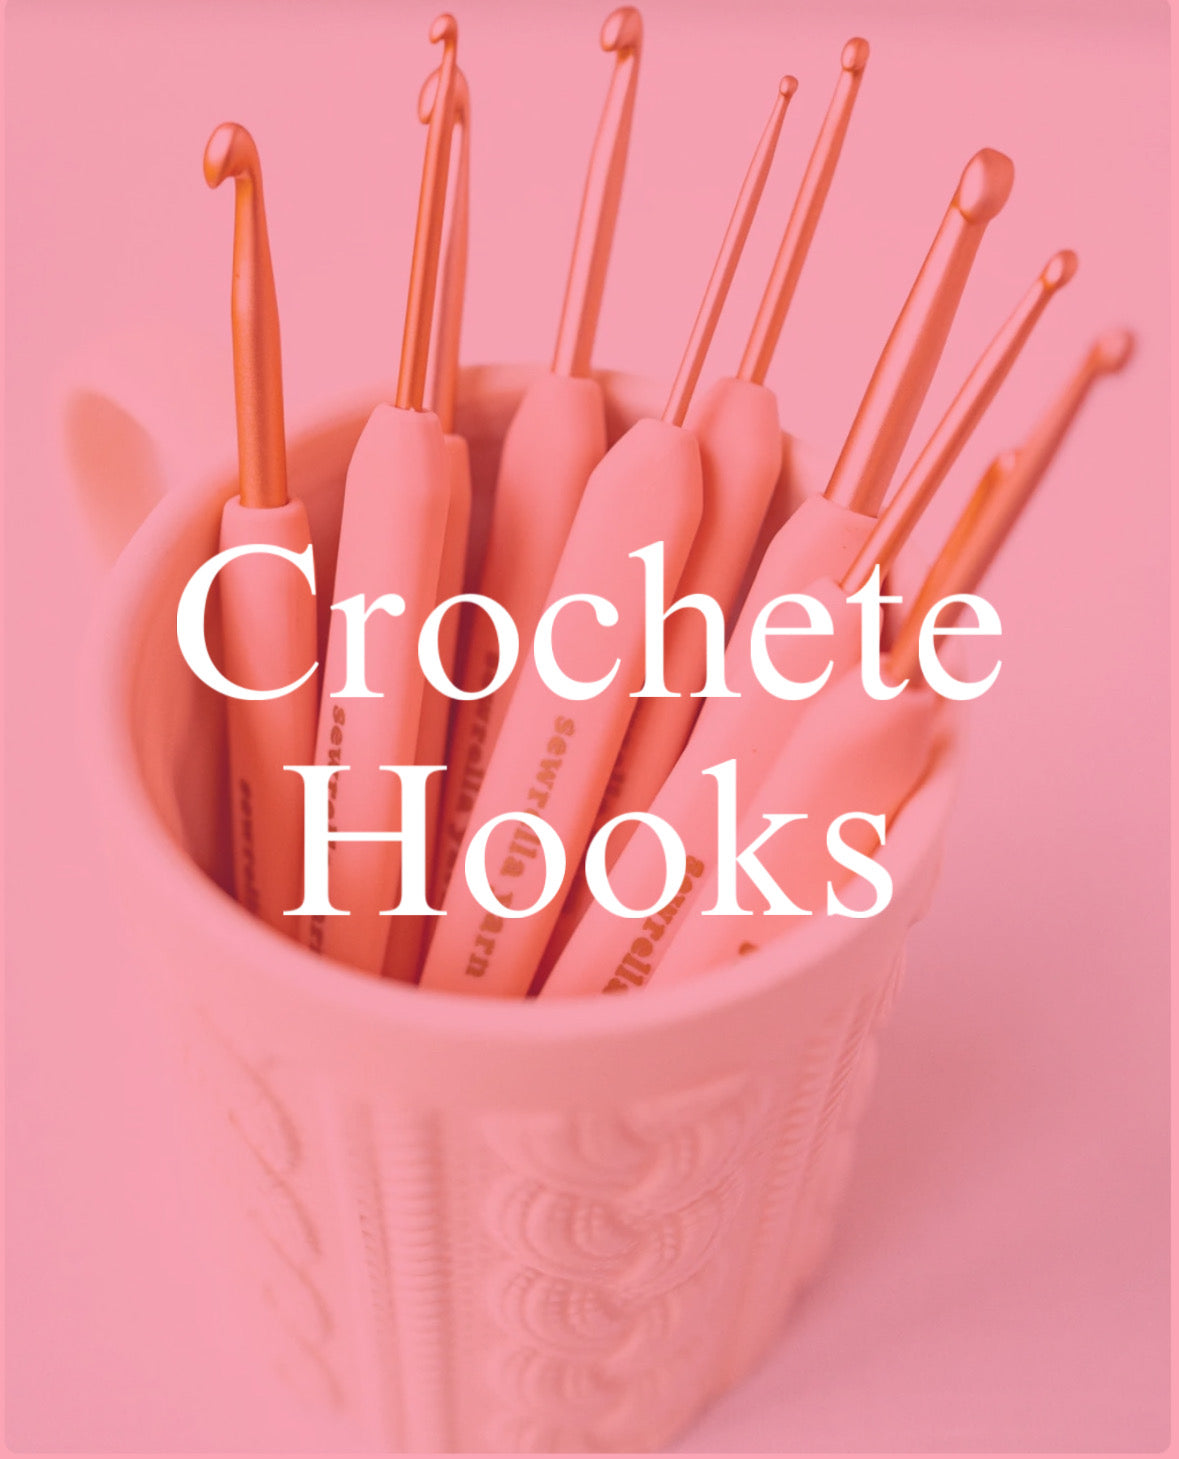 Crochet hooks